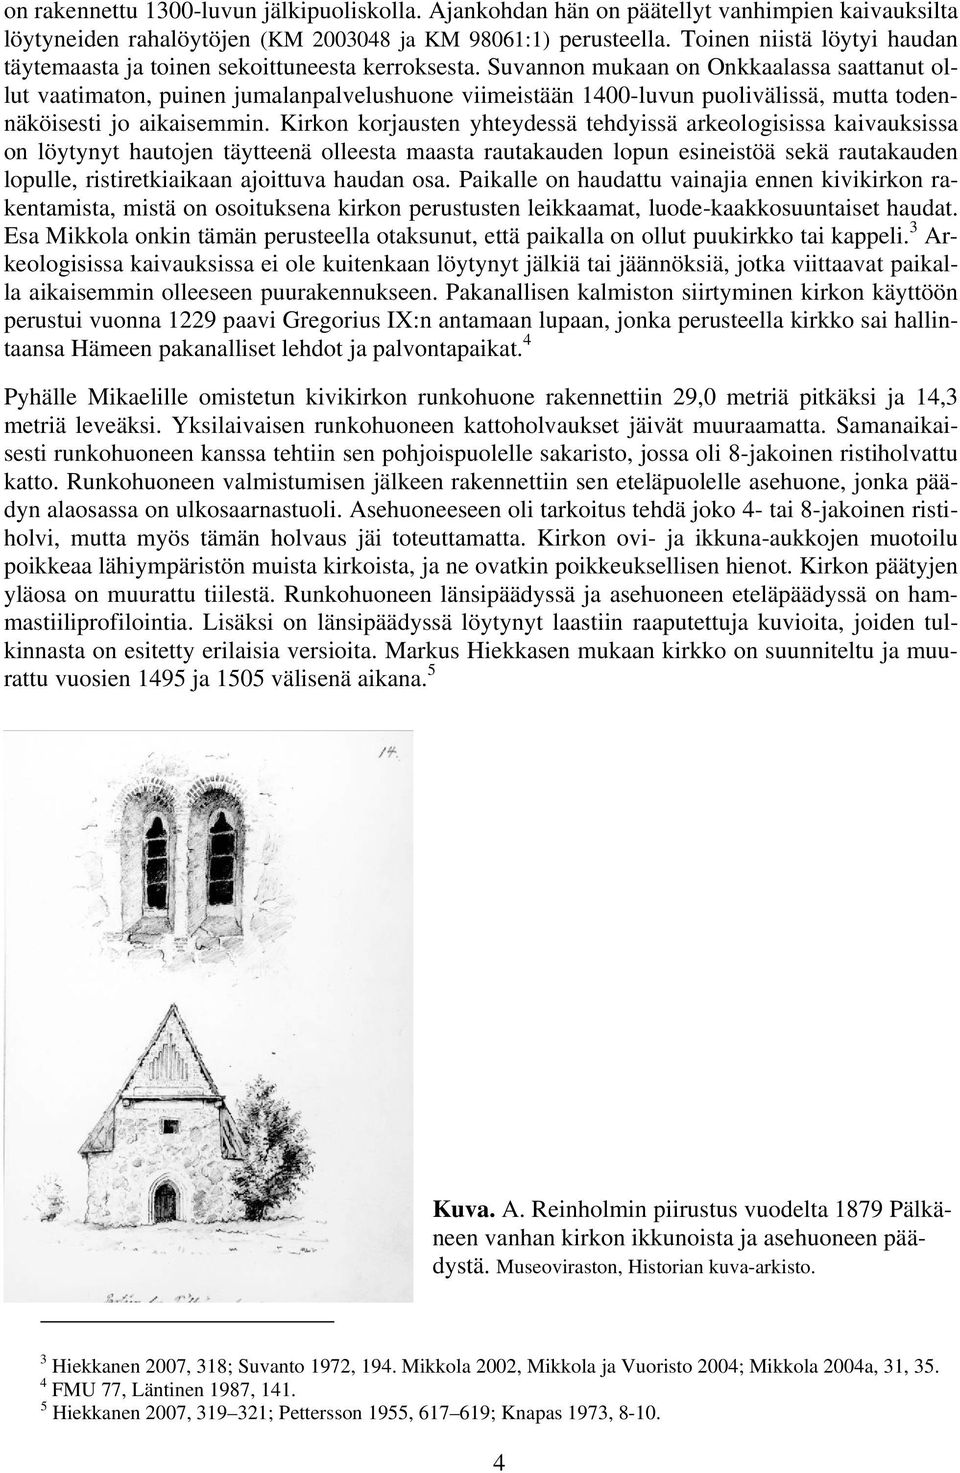 Suvannon mukaan on Onkkaalassa saattanut ollut vaatimaton, puinen jumalanpalvelushuone viimeistään 1400-luvun puolivälissä, mutta todennäköisesti jo aikaisemmin.